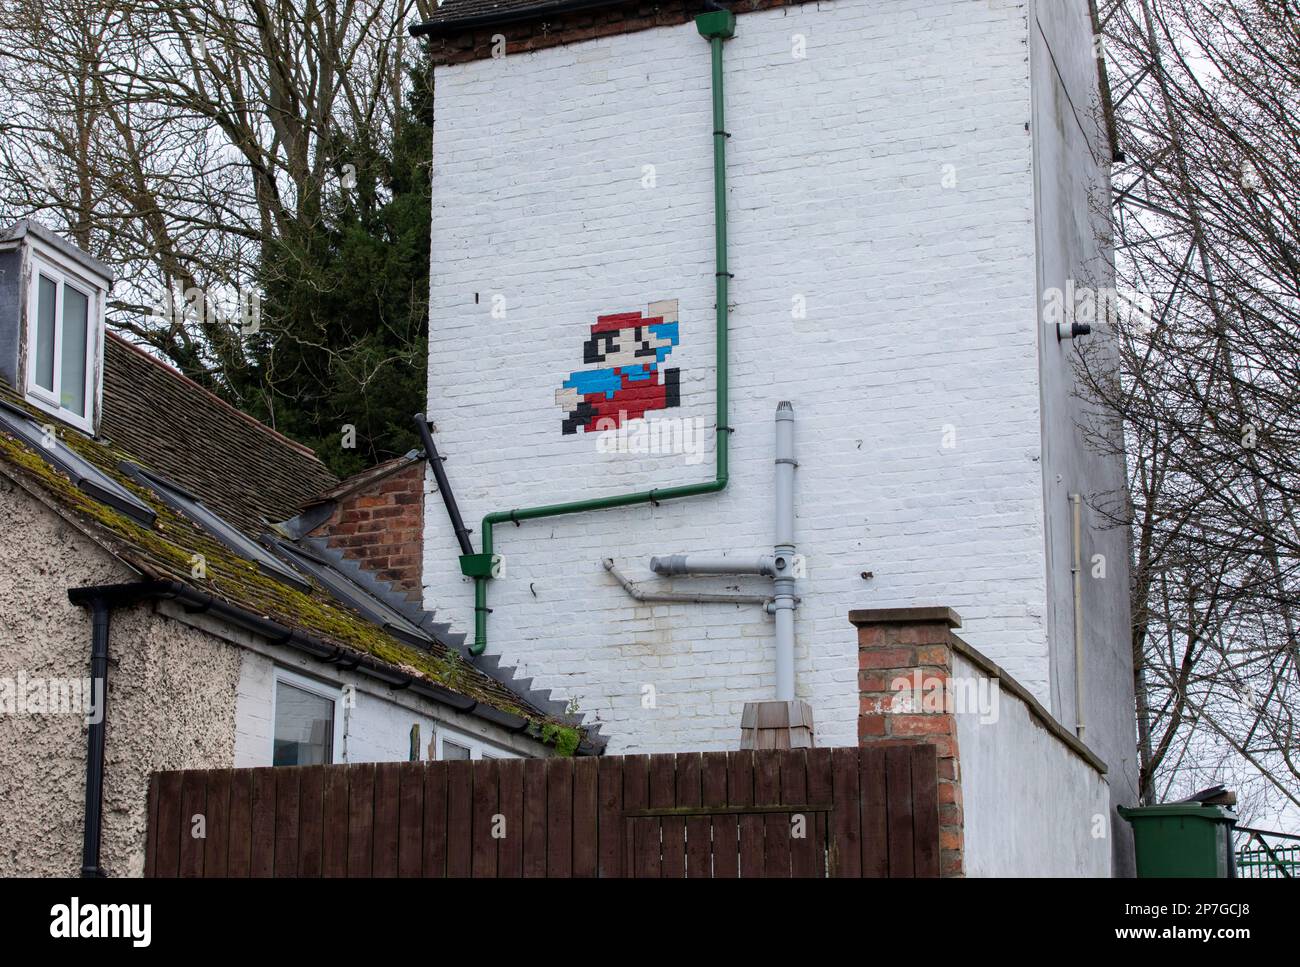 Un personnage de Super Mario Brothers peint sur le côté d'une maison à Hylton Road, Worcester, Royaume-Uni Banque D'Images